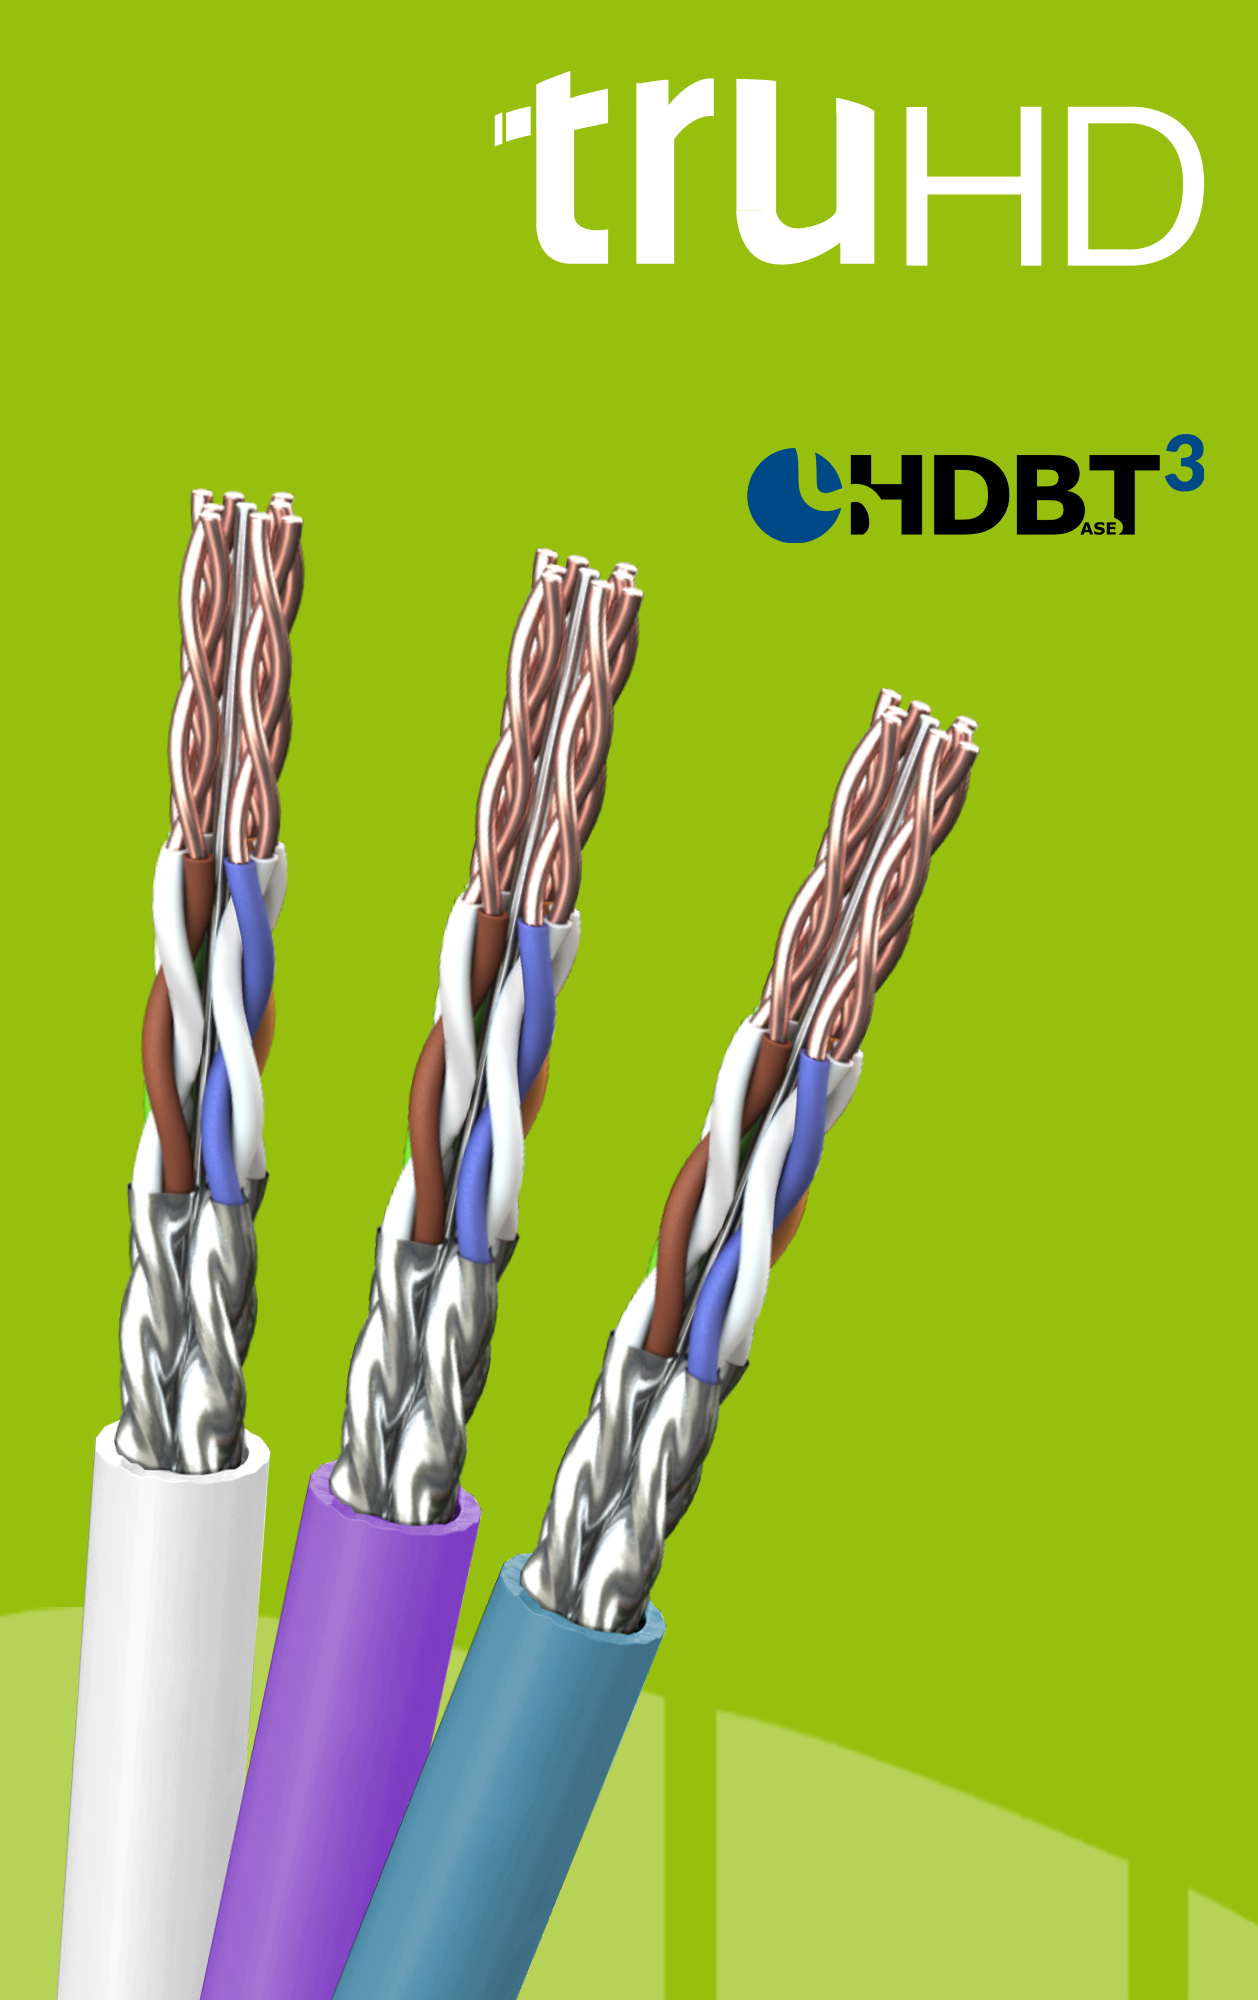 TruHD Cat 6A HDBaseT Cables